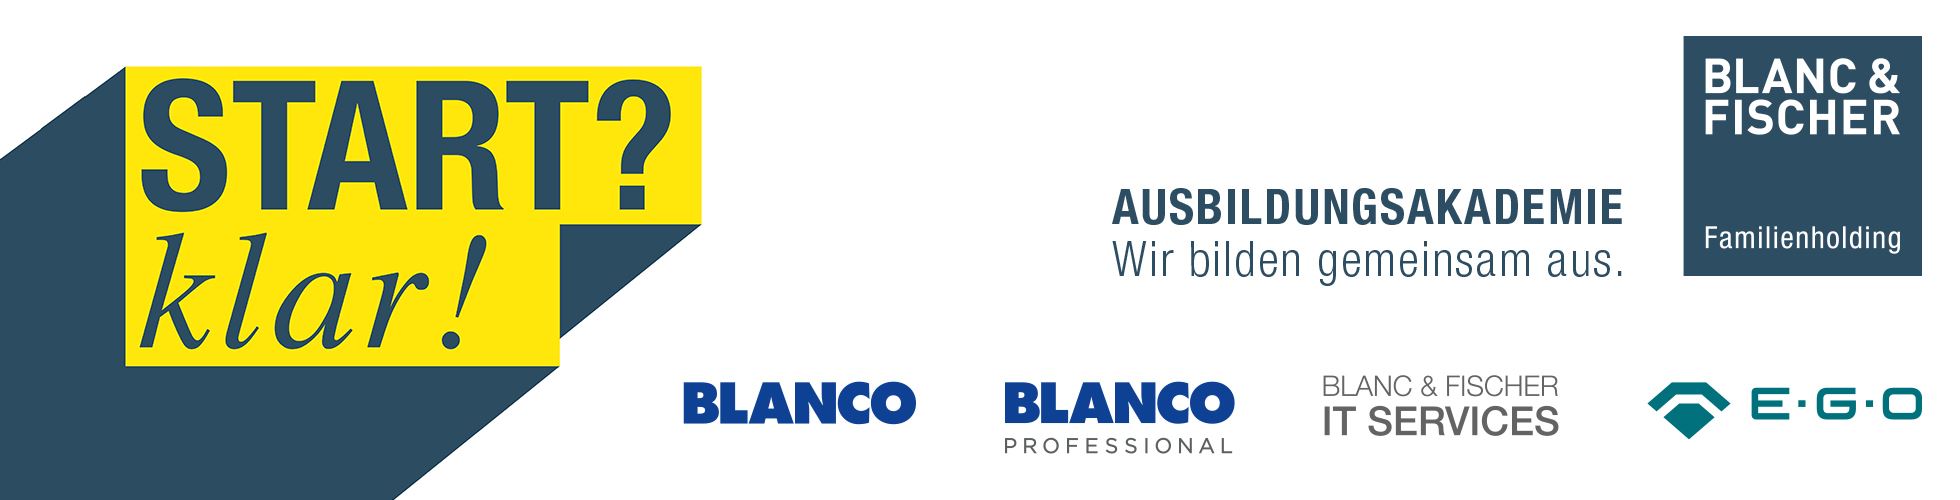 BLANC & FISCHER Ausbildungsakademie Blanc und Fischer IT Services, BLANCO, BLANCO Professional und E.G.O.